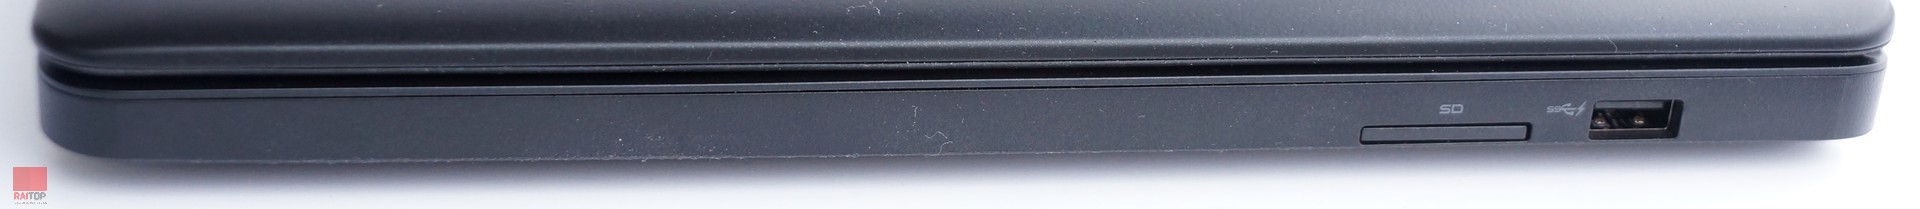 لپ تاپ استوک 15 اینچی Dell مدل Latitude E5550 پورت های راست